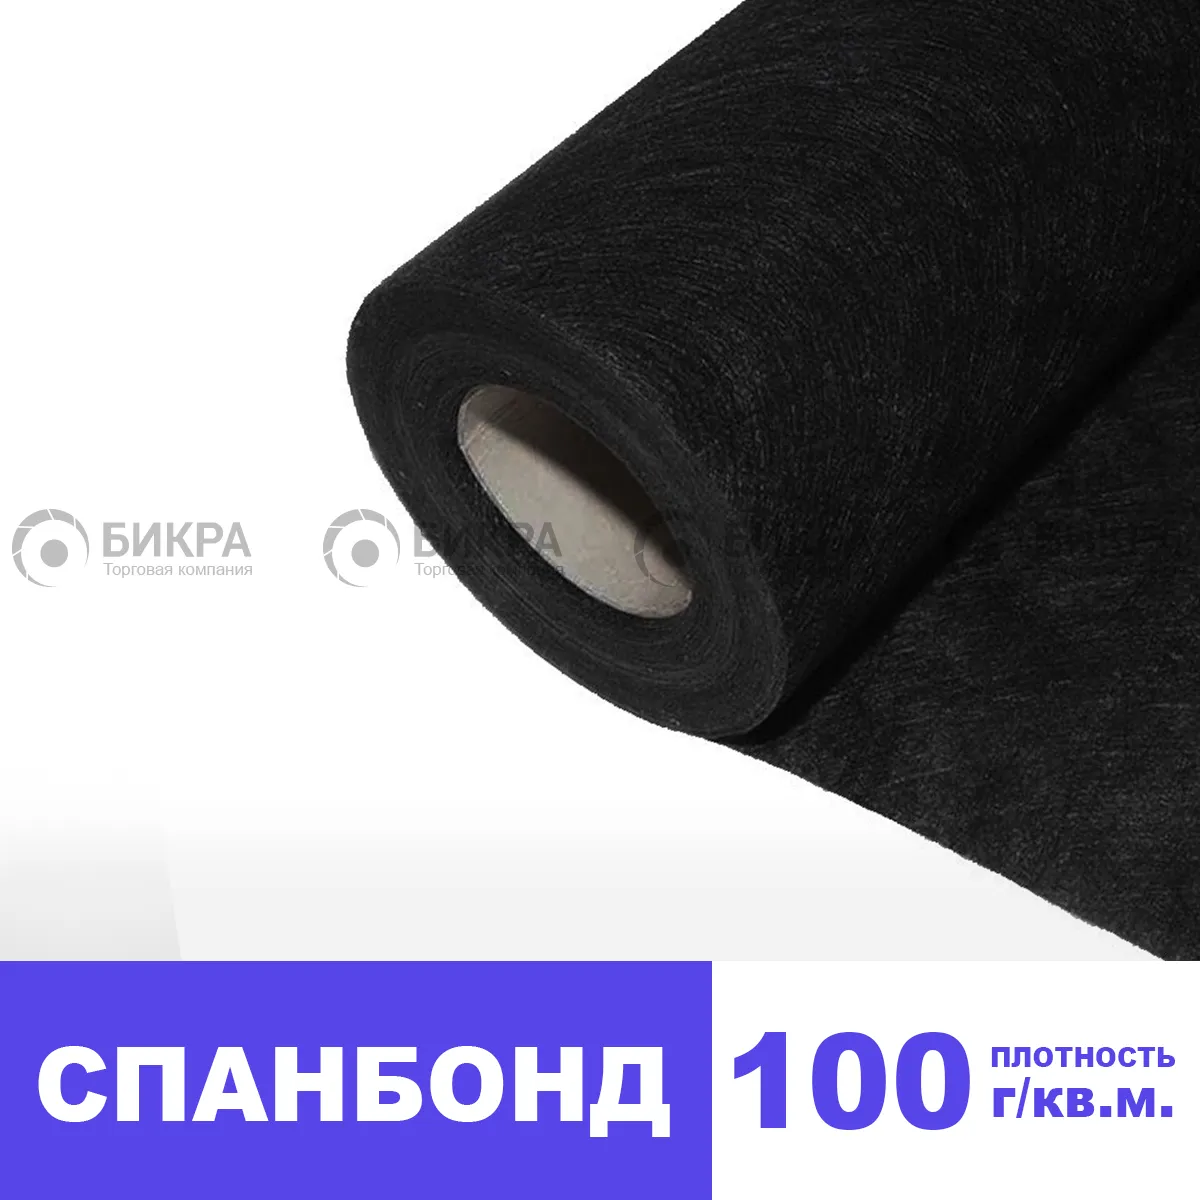 Спанбонд 100 г/м2 (черный) | Цена от 35 руб./м2 | Купить 